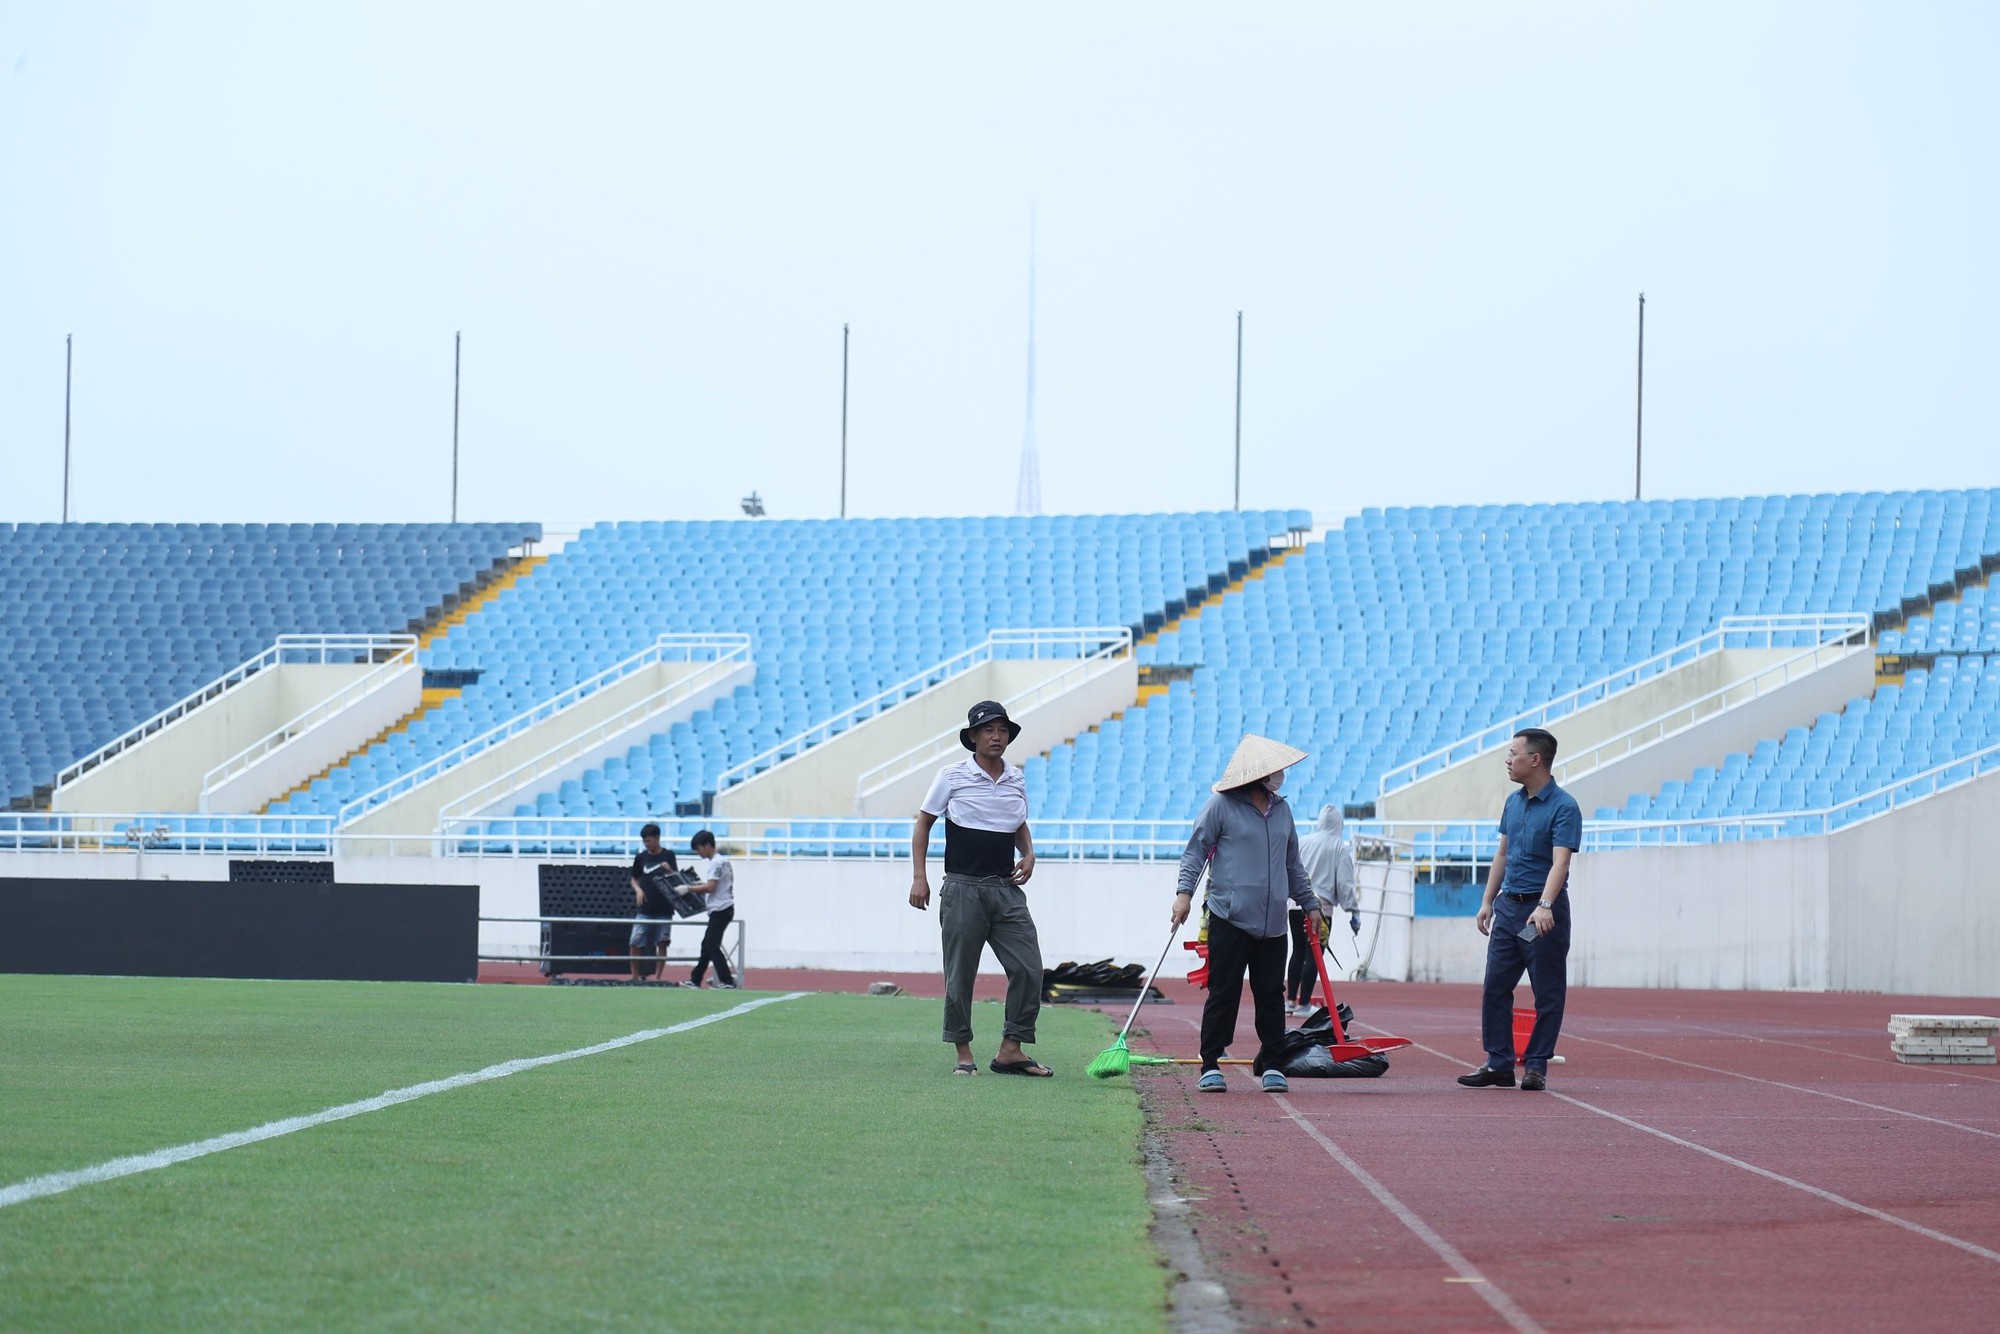 Sân Mỹ Đình "khoác áo mới" trước trận đấu của ĐT Việt Nam- Ảnh 4.